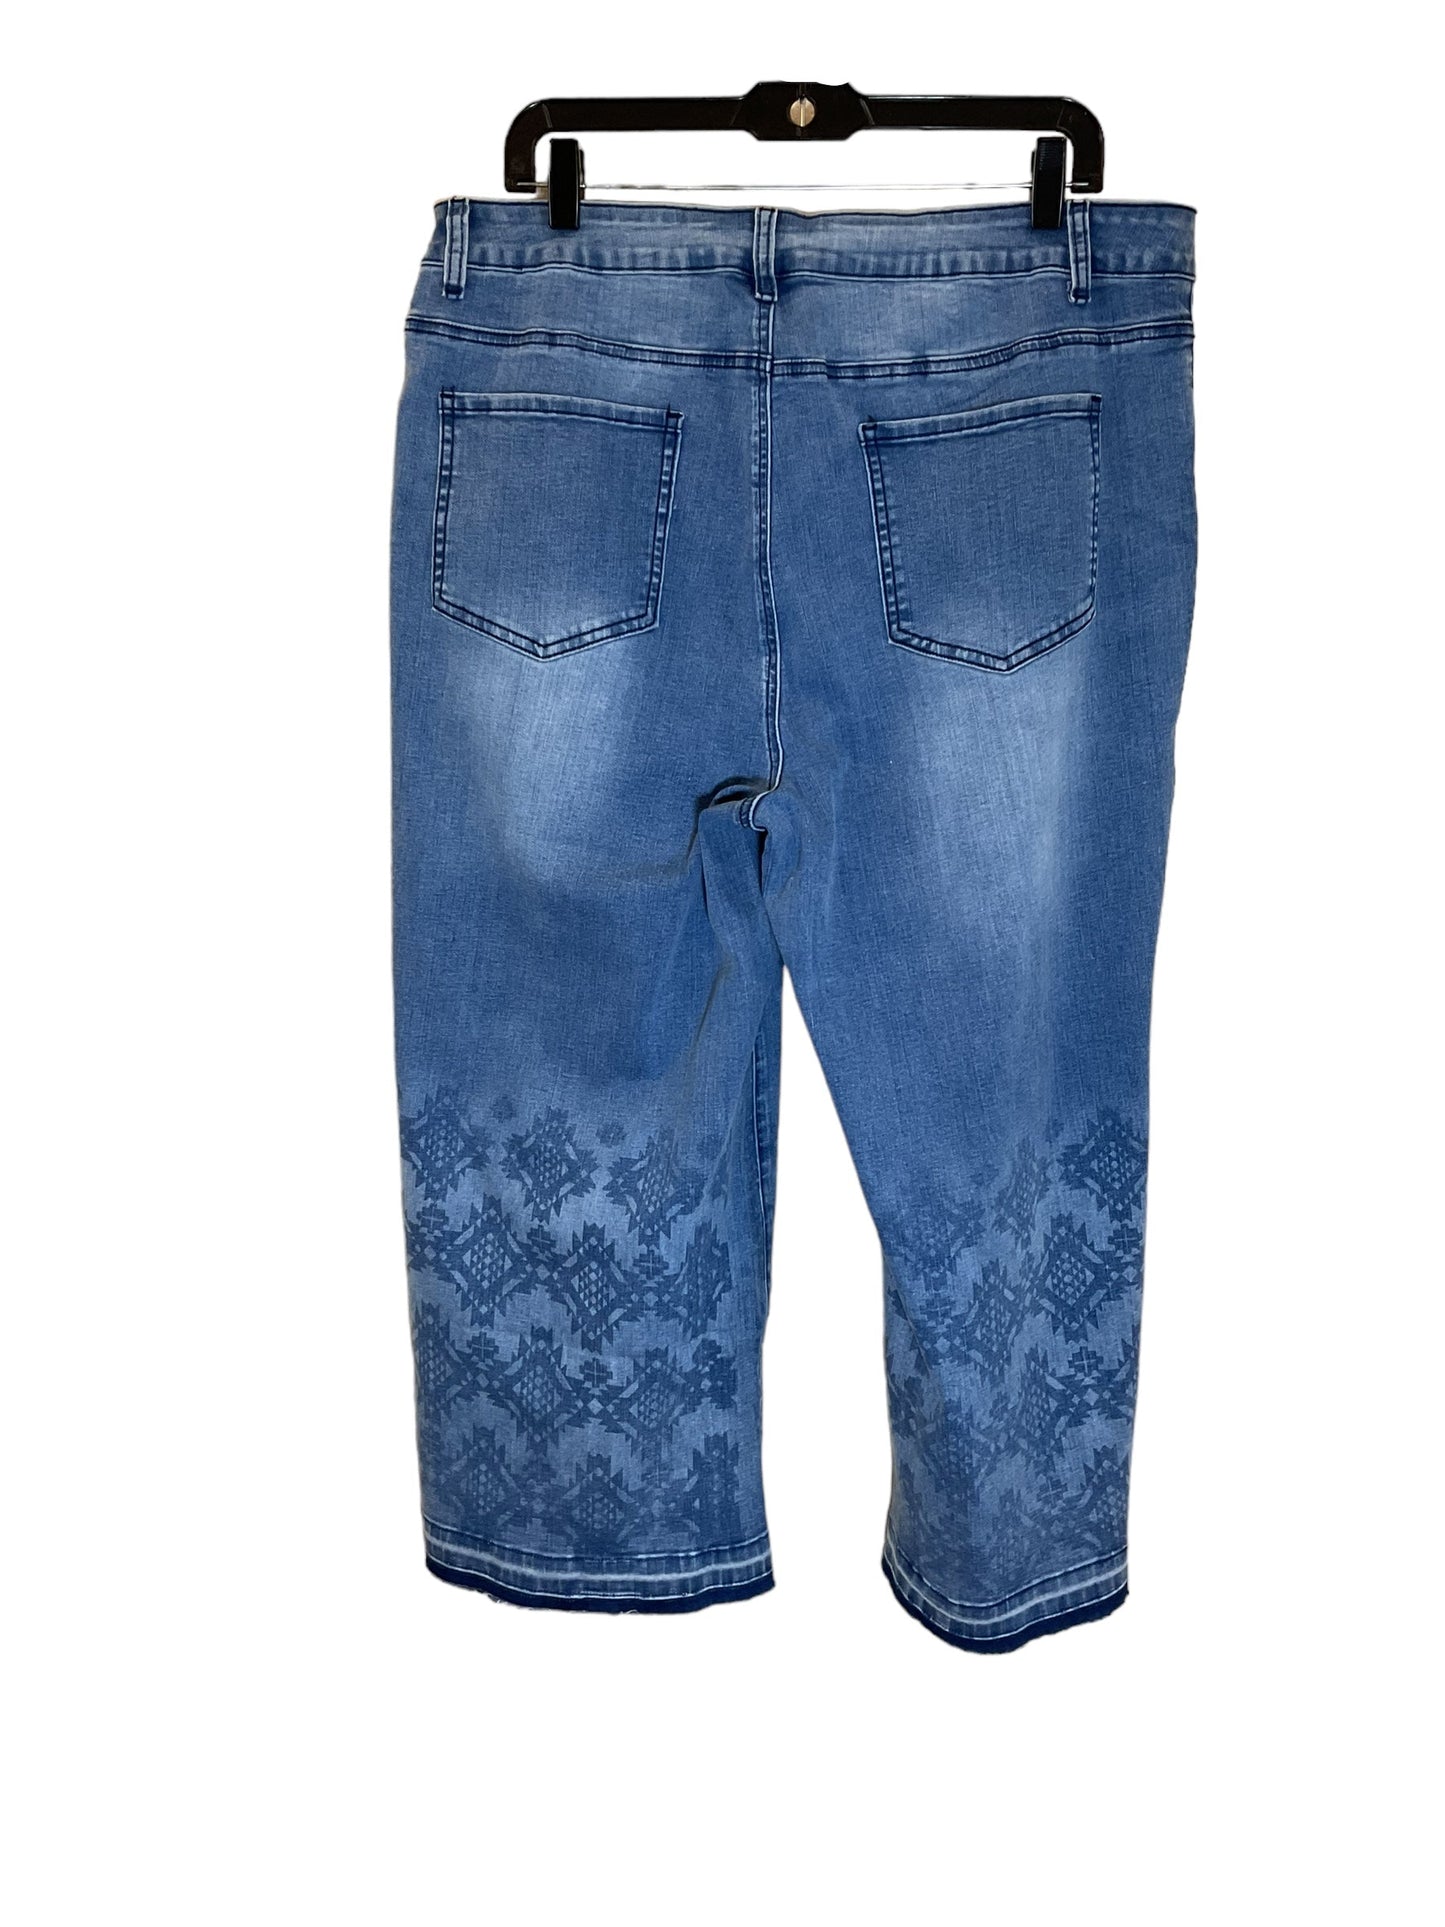 Blue Denim Jeans Wide Leg Clothes Mentor, Size 3x